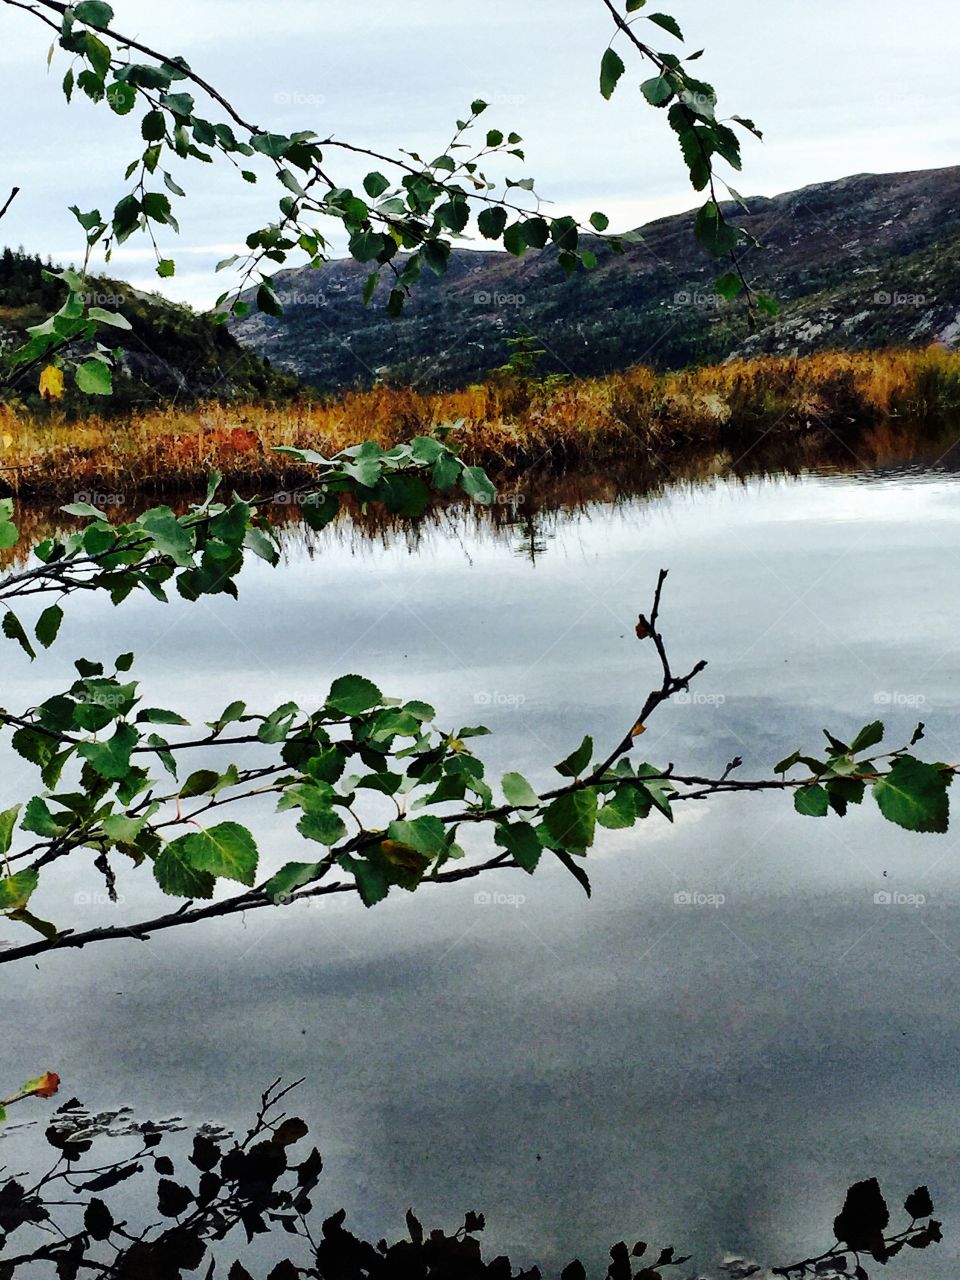 Flå, Hallingdal, Norway. Reflection in a mountain water